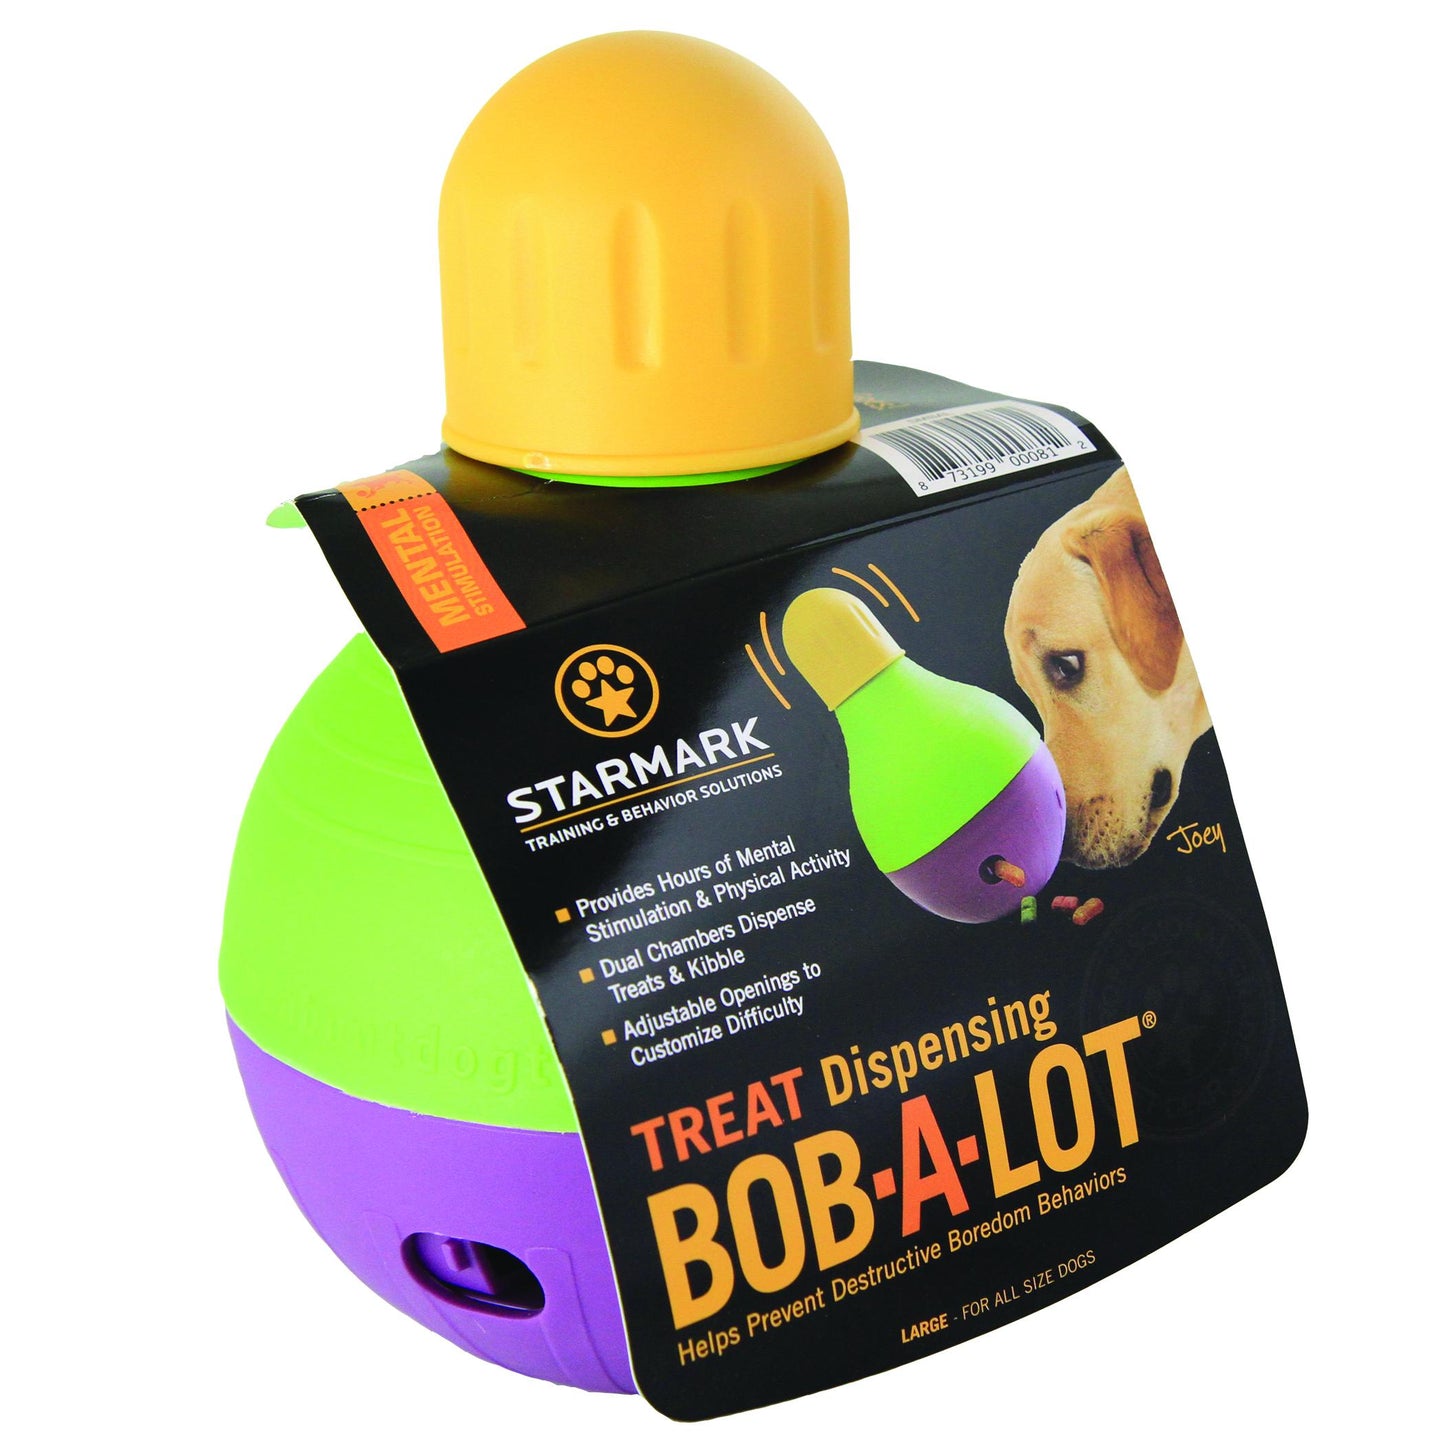 STARMARK BOB-A-LOT juguete interactivo dispensador de alimento para perros